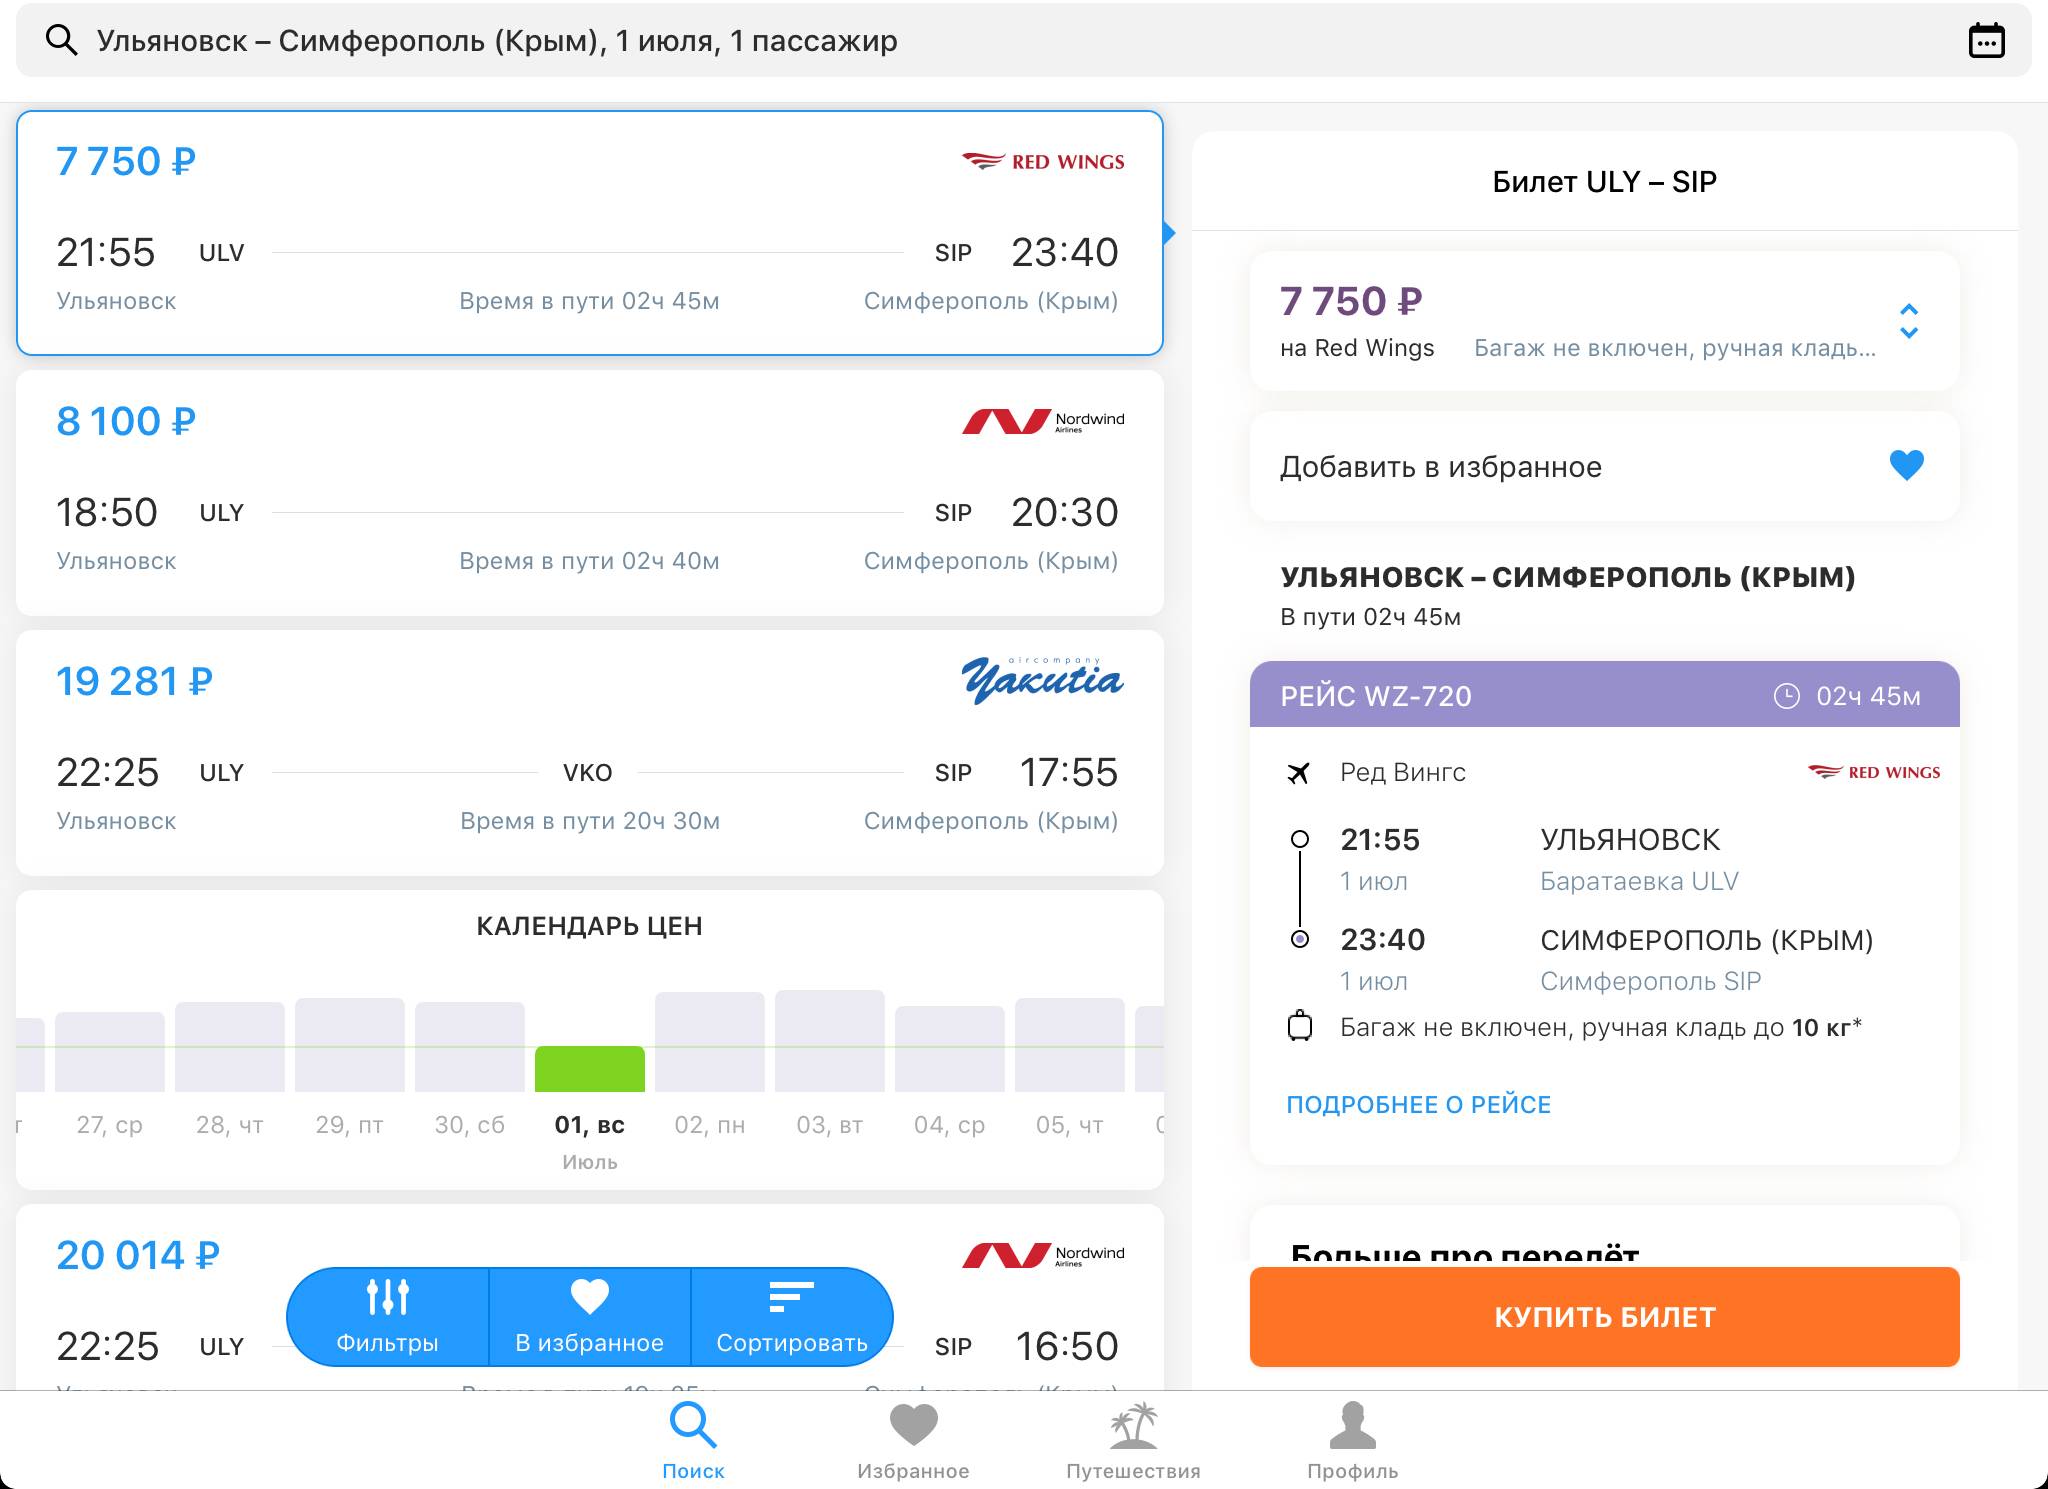 Купить авиабилет из симферополя в ульяновске самара мин воды самолет цена билета